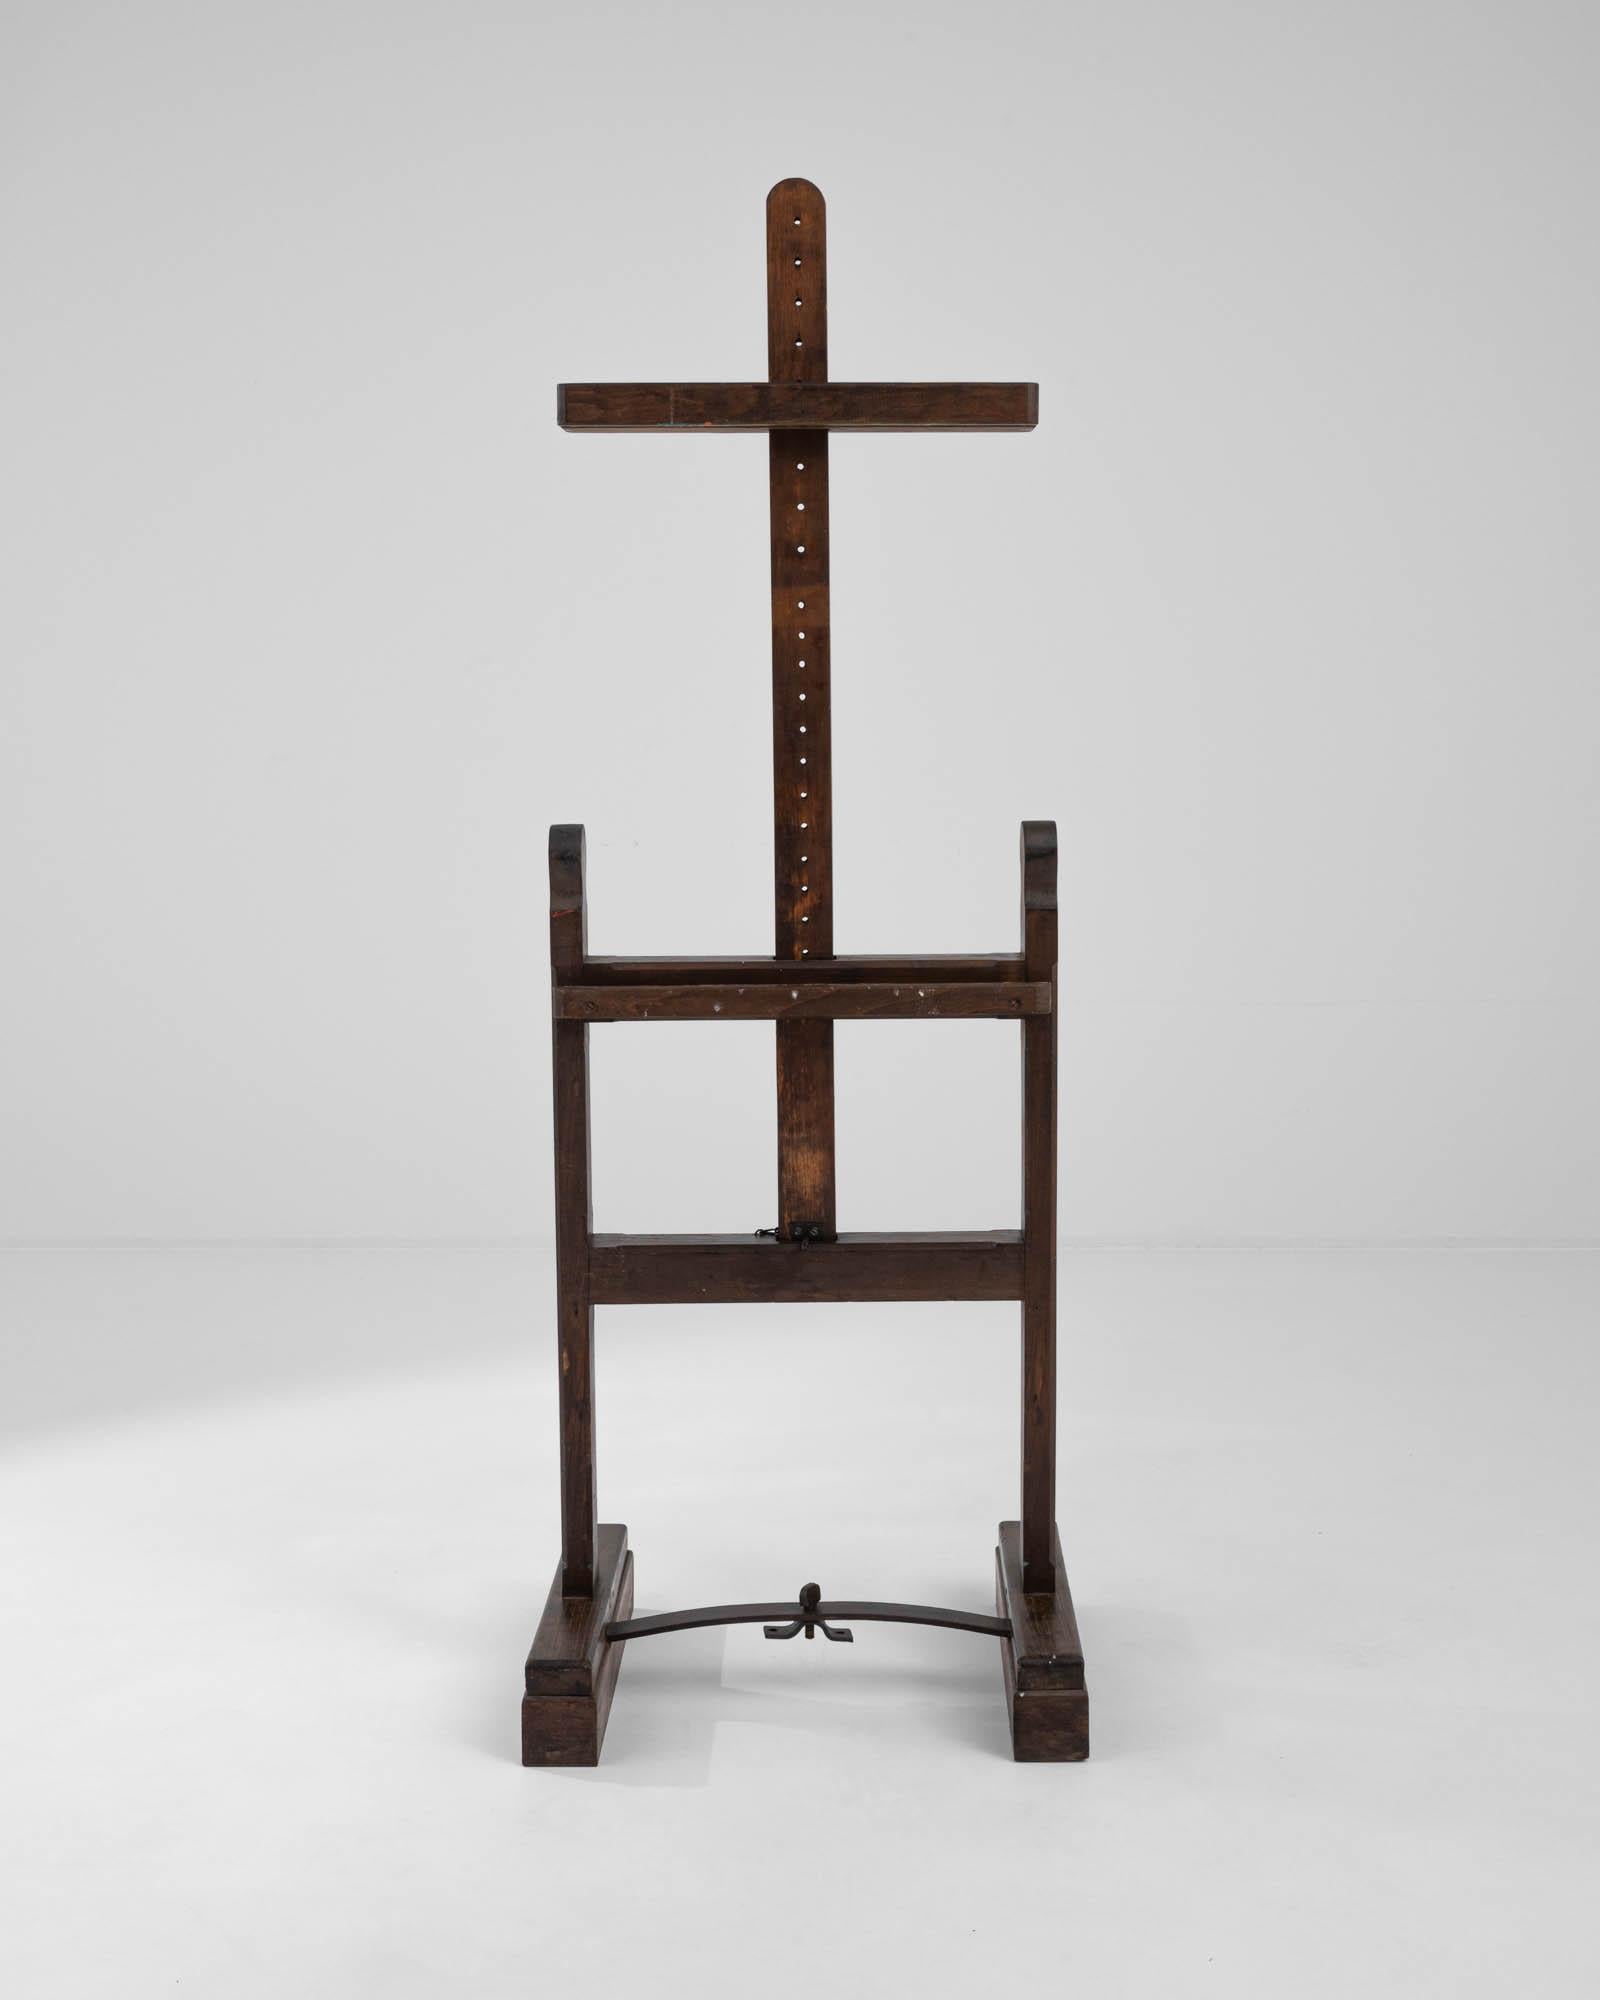 Ce chevalet en forme de croix a été fabriqué en France au cours du XXe siècle dans un bois sombre et raffiné. Doté d'un cadre traditionnel en H orné de fleurons sculptés, il repose résolument sur ses robustes pieds rectangulaires, reliés par un